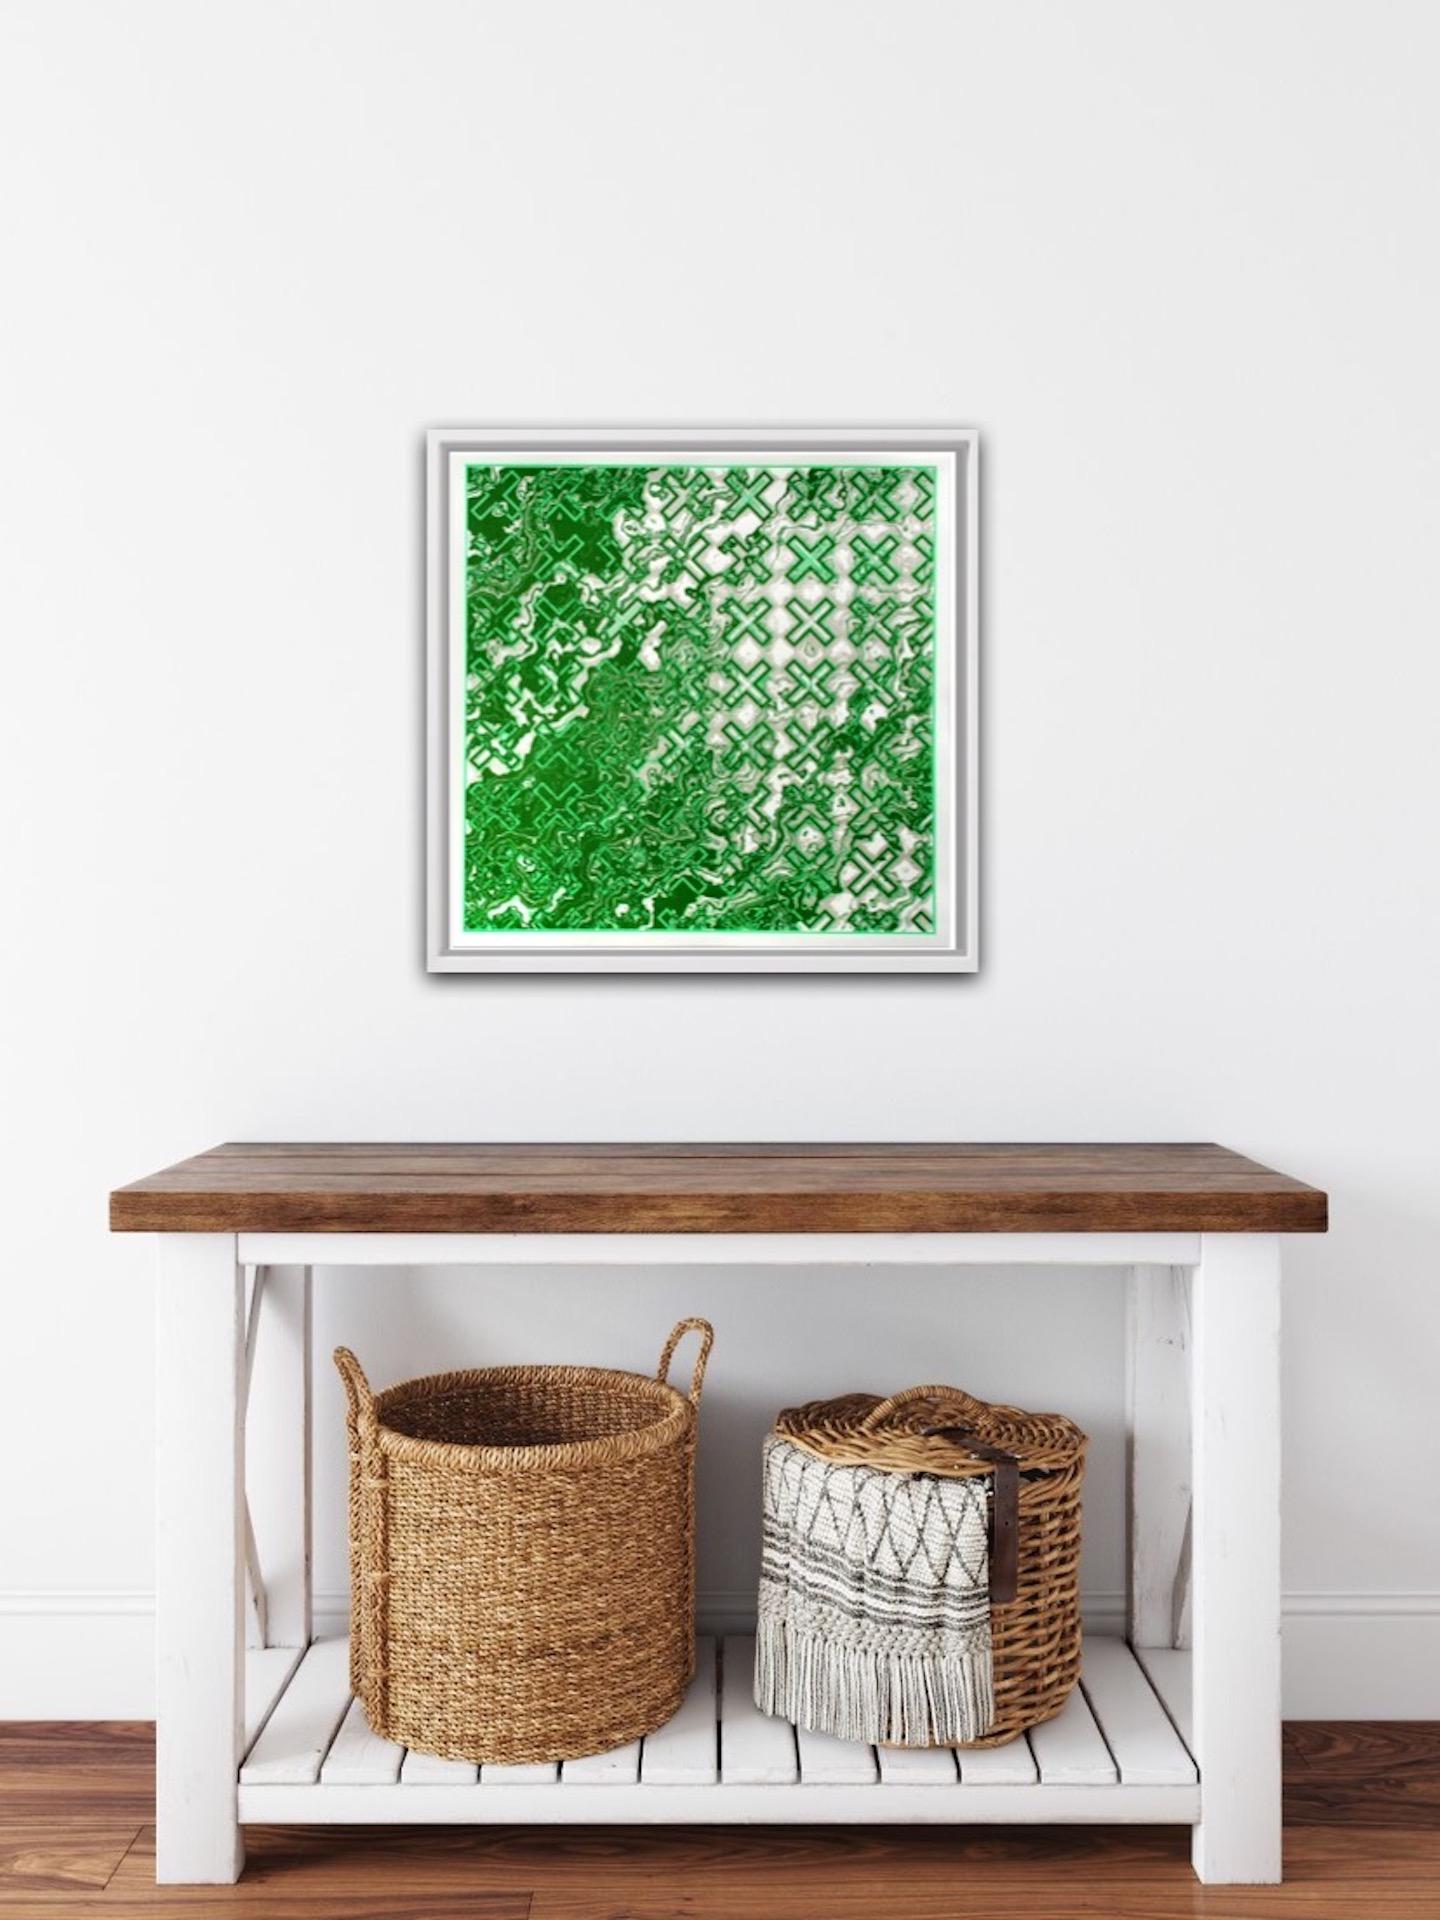 Chris Keegan, Green Flow, Limited Edition Silkscreen Print, Abstract Art 4